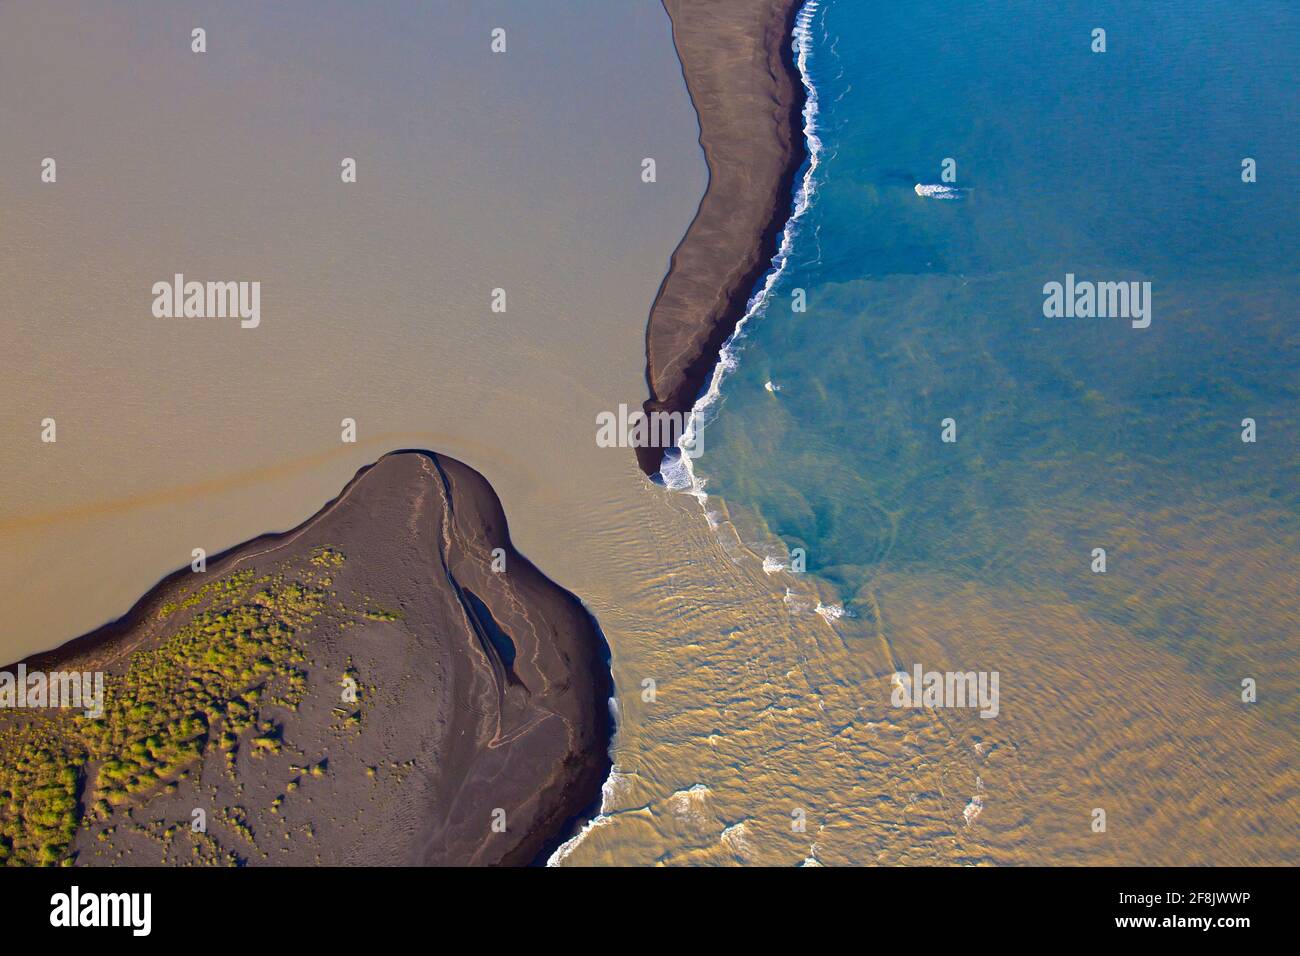 Vista aérea sobre Landeyjarsandur mostrando la playa con arena volcánica negra y agua marrón cargada de sedimentos que fluyen en el mar en verano, Islandia Foto de stock